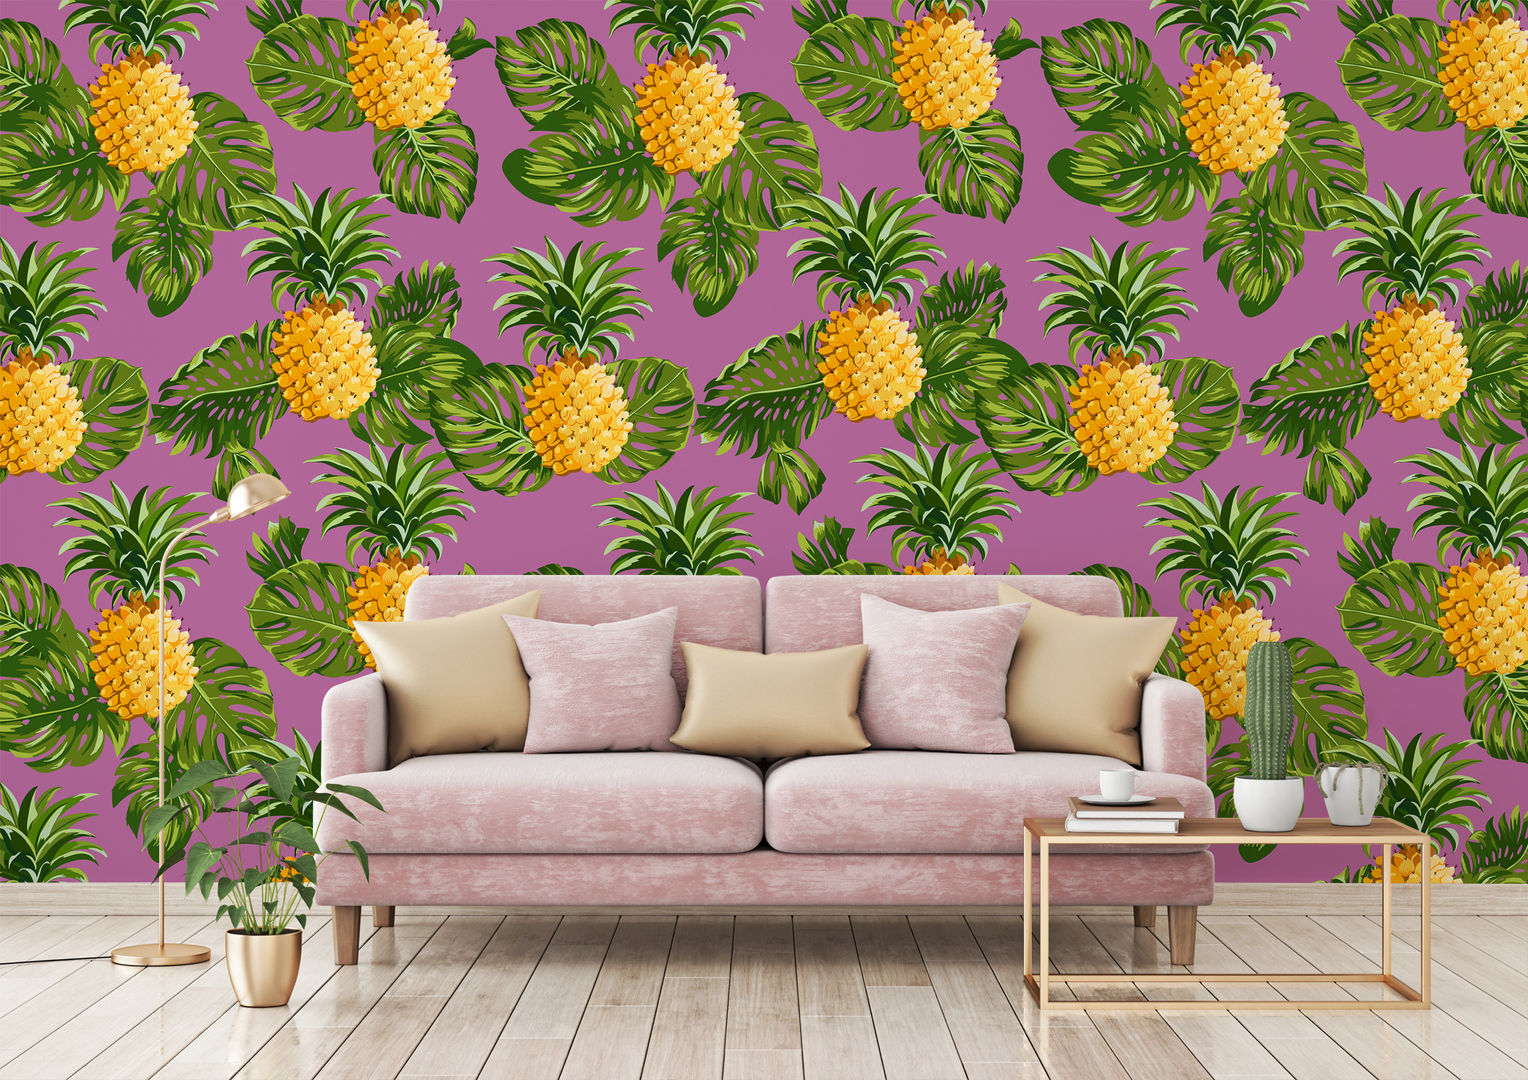 HYPNOTIC PINEAPPLES Pixers غرفة المعيشة Pixers,pink,pineapple,wallmural,wallpaper,tropical